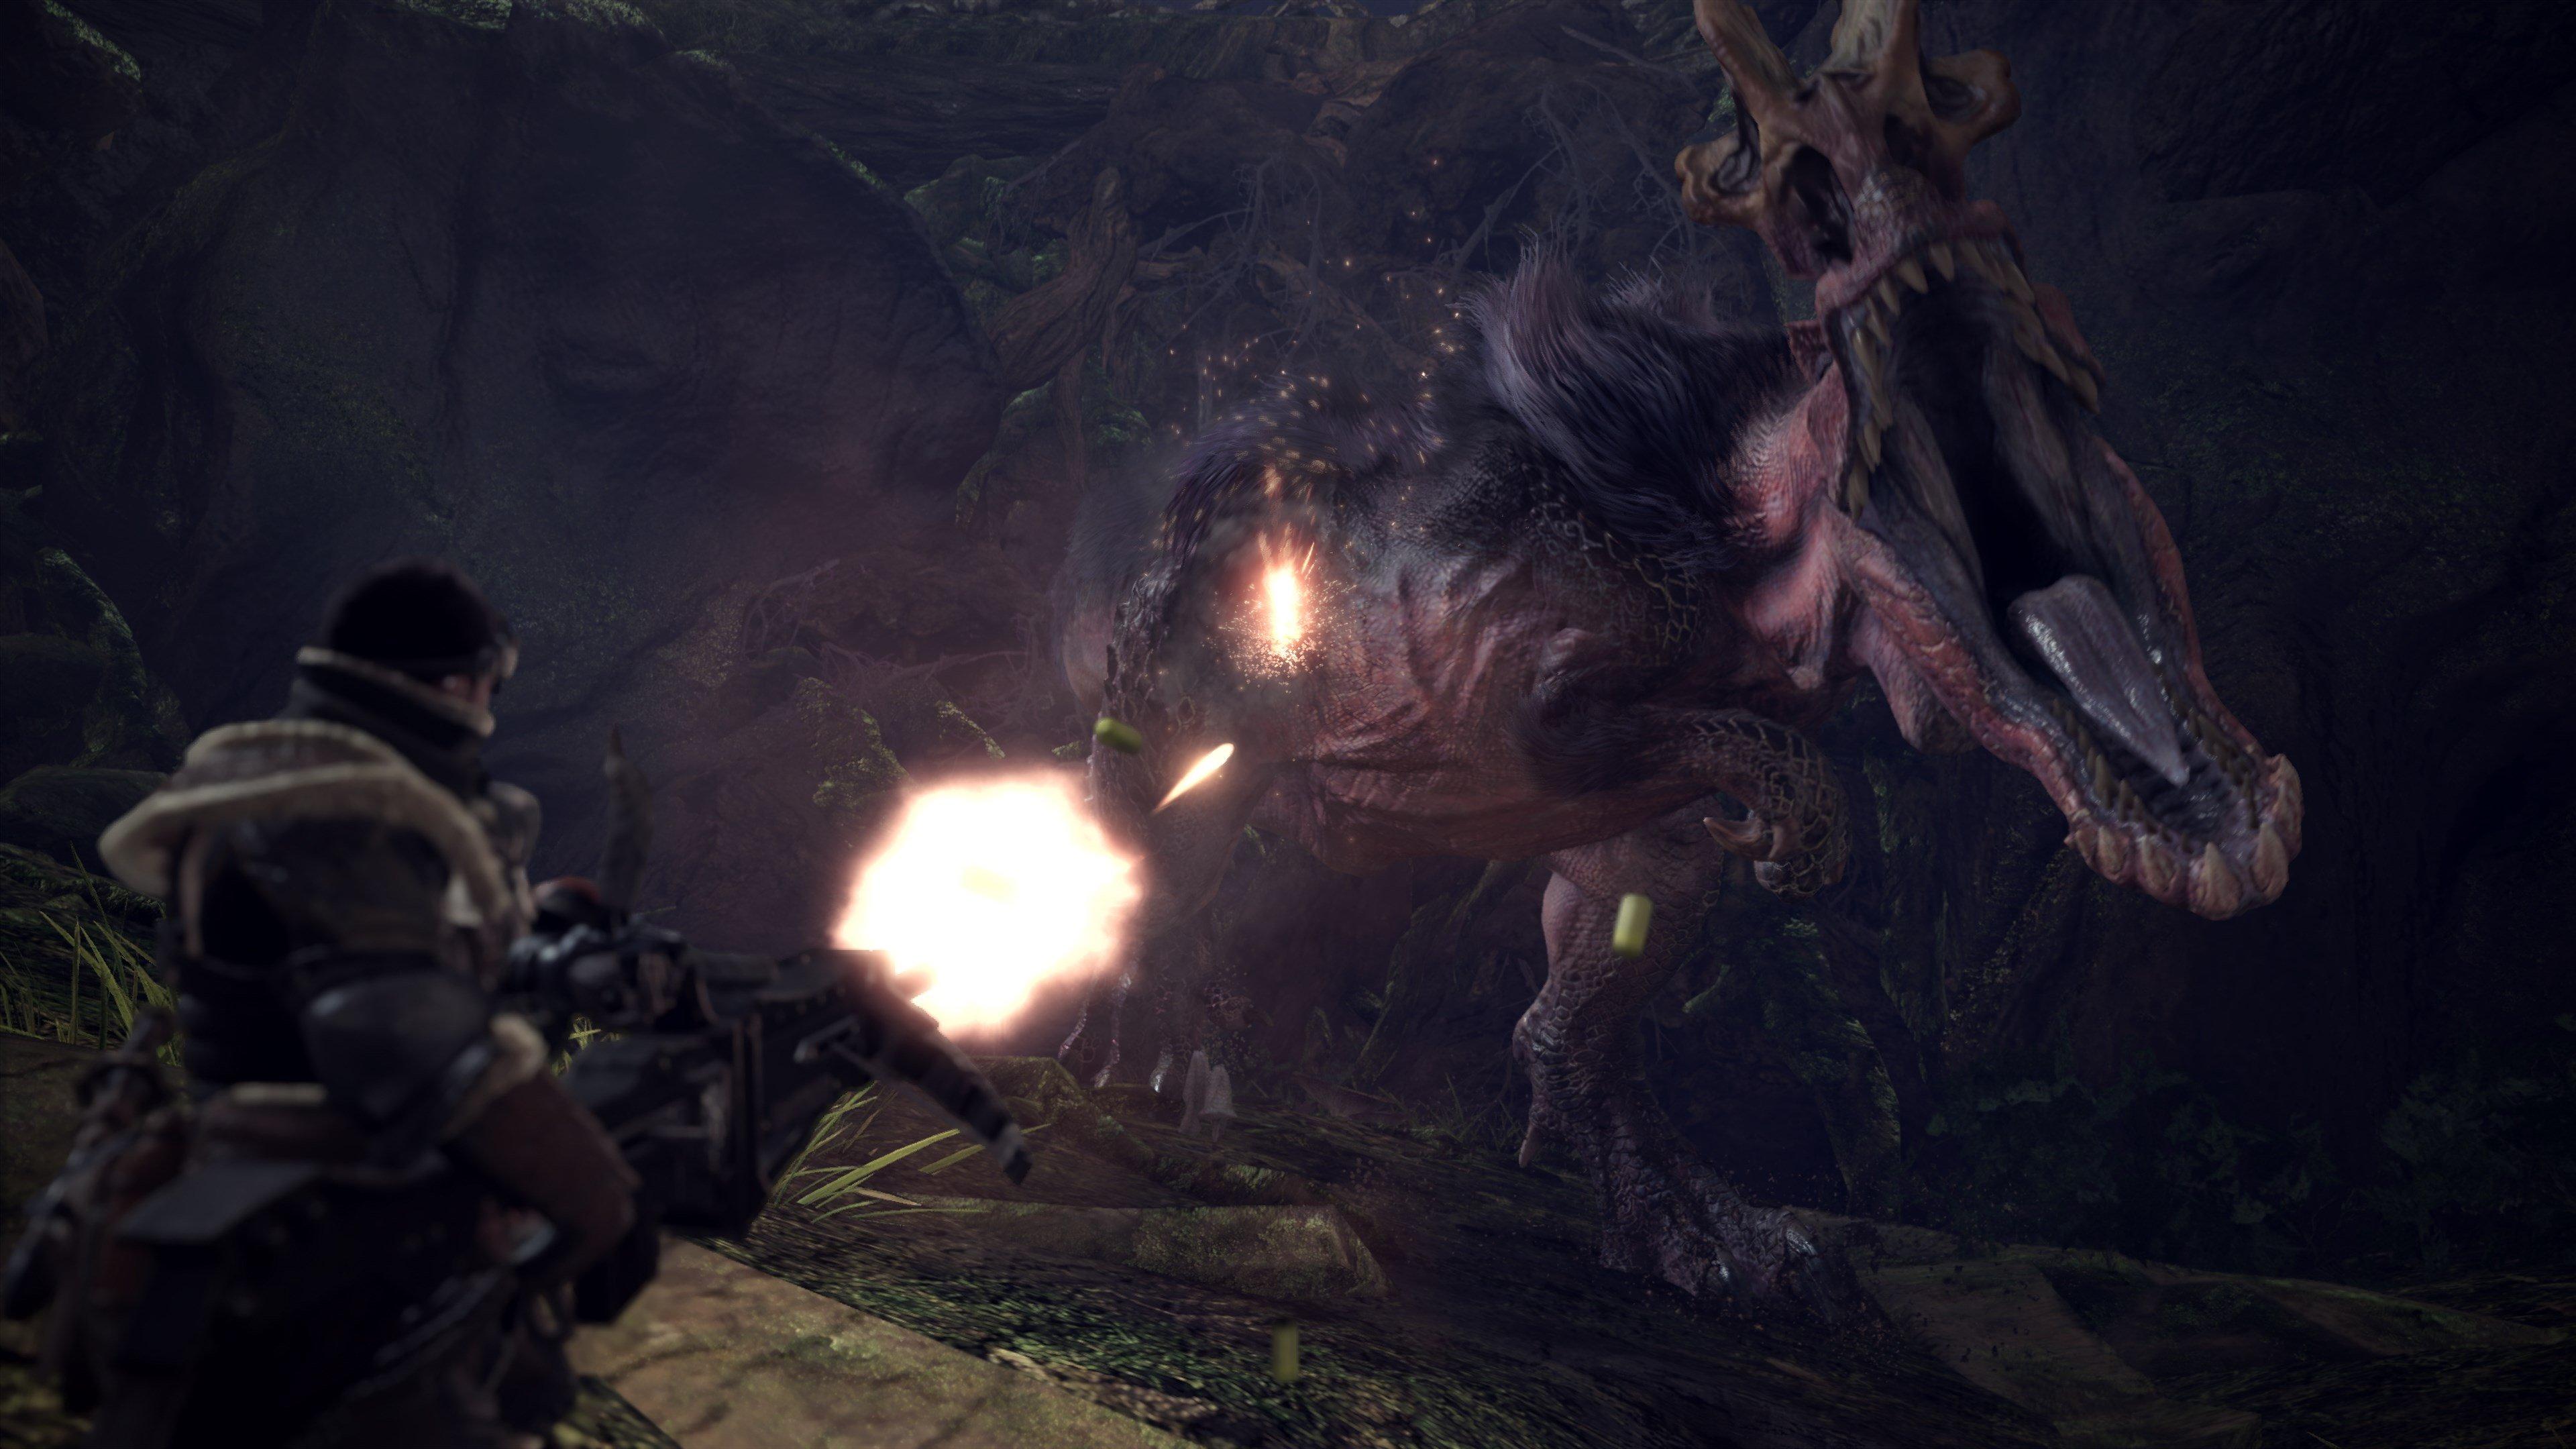  Monster Hunter World - Xbox One : Capcom U S A Inc